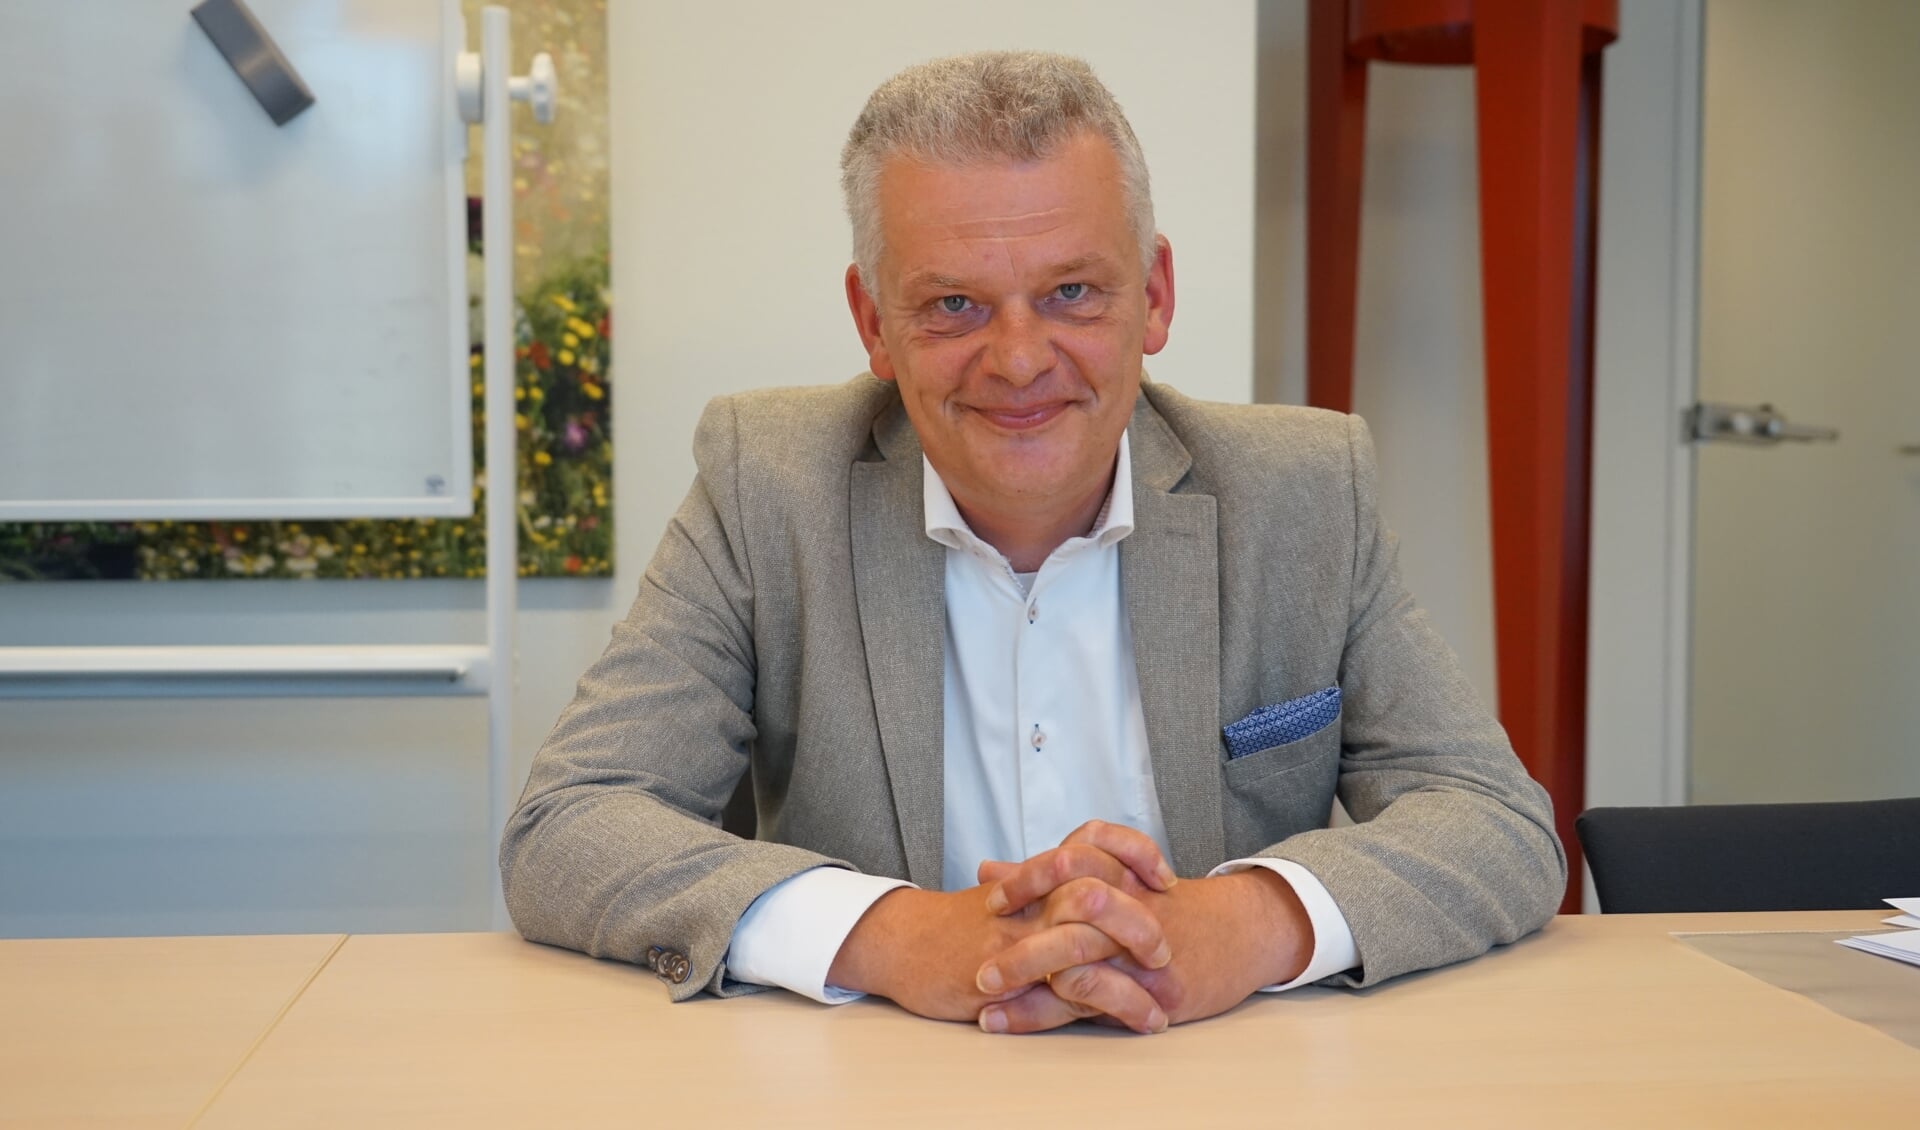 Ondanks de donkere financiële wolken ziet wethouder Daan Binnendijk de toekomst met vertrouwen tegemoet.  